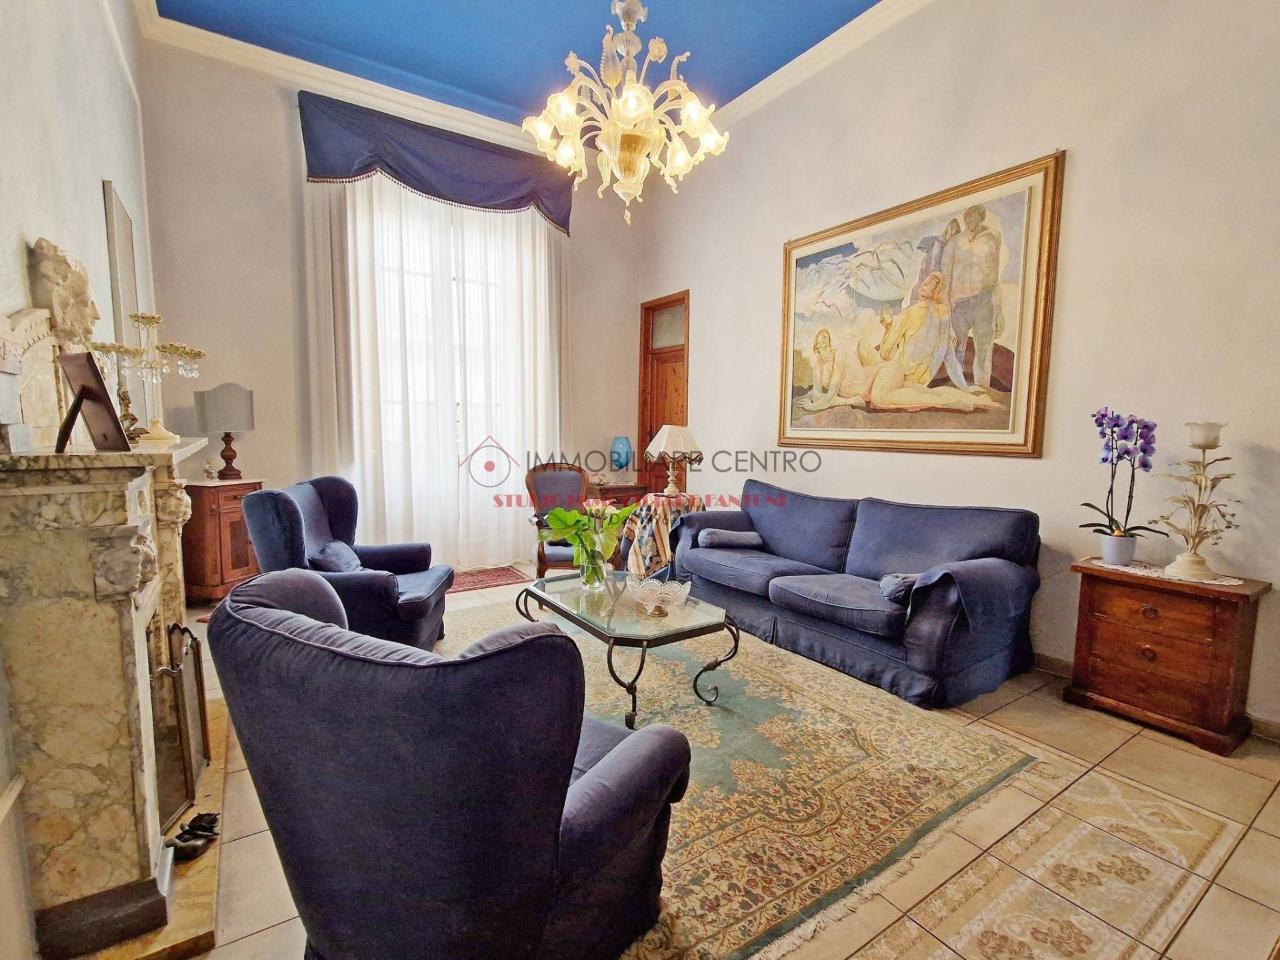 Villa in vendita a Viareggio